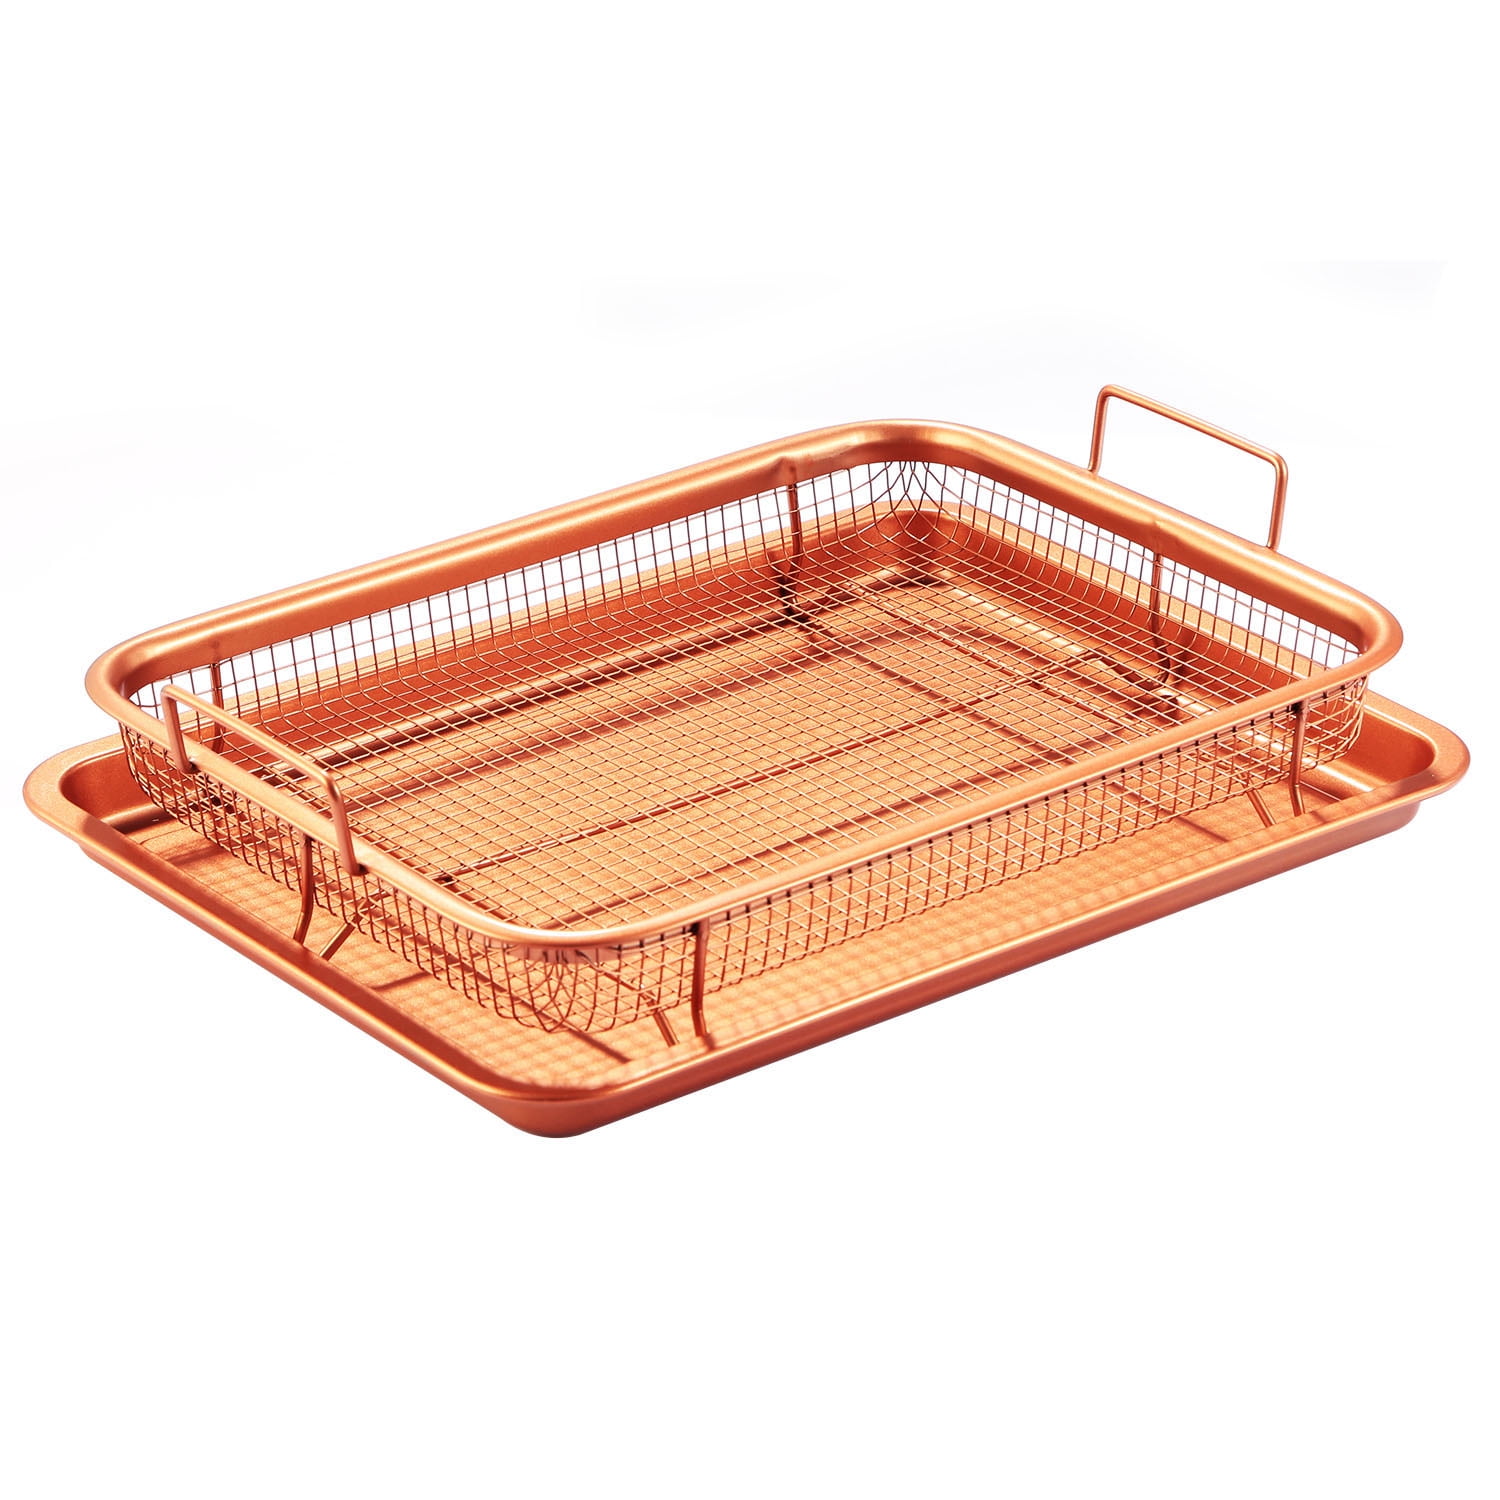 Copper Infused Crisper Tray Set Non-Stick Tray Serving Oven Grill 